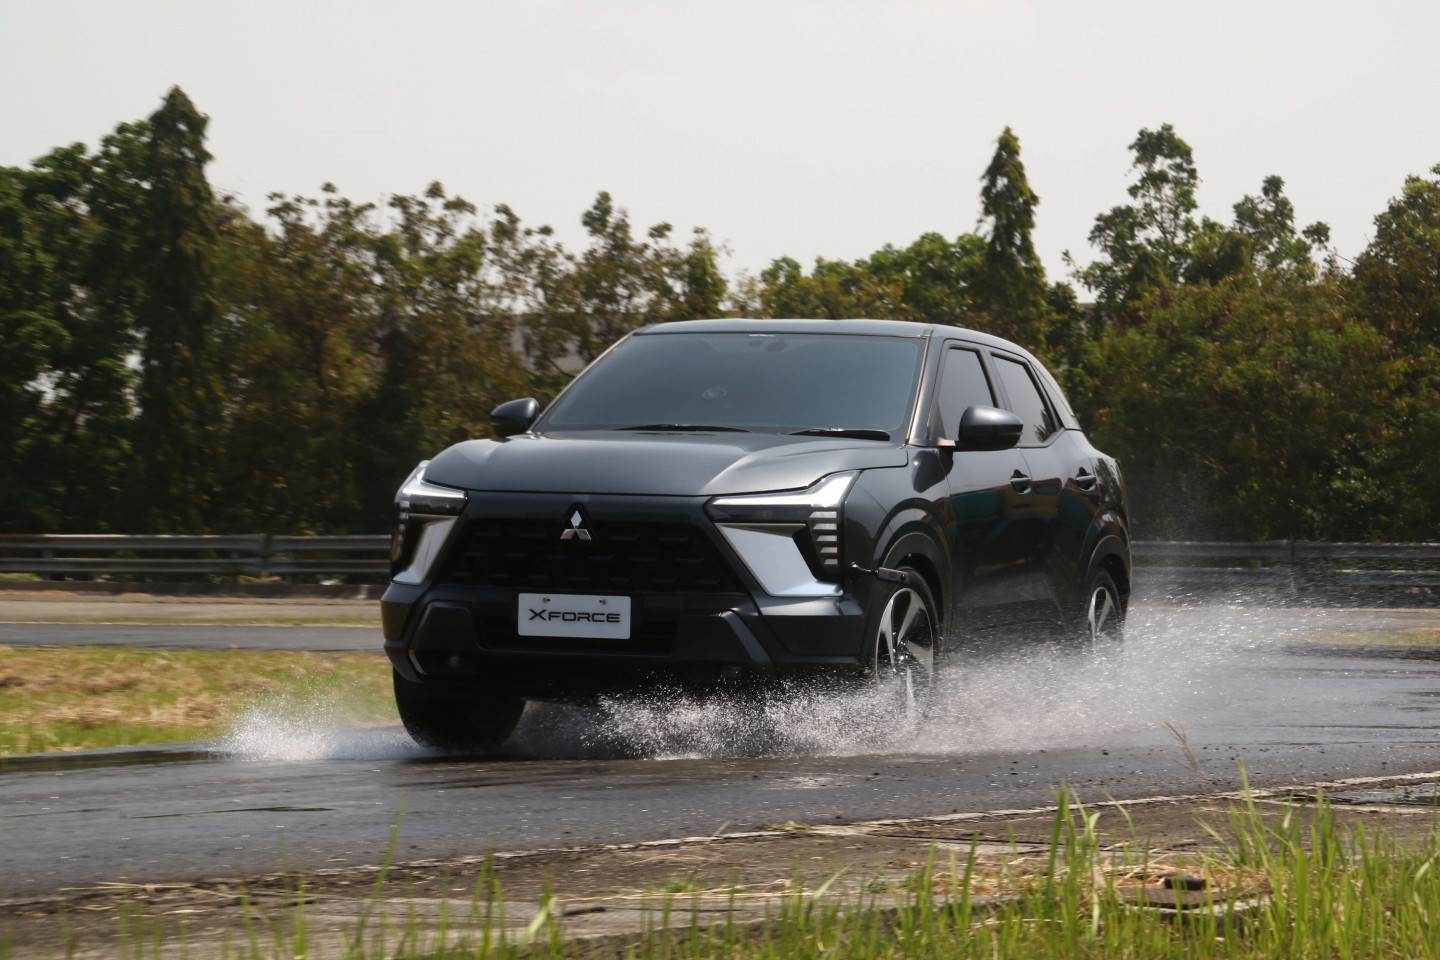 Mitsubishi XFORCE, Compact SUV Baru dengan 7 Fitur Unggulan Yang Tidak Dimiliki Kompetitor